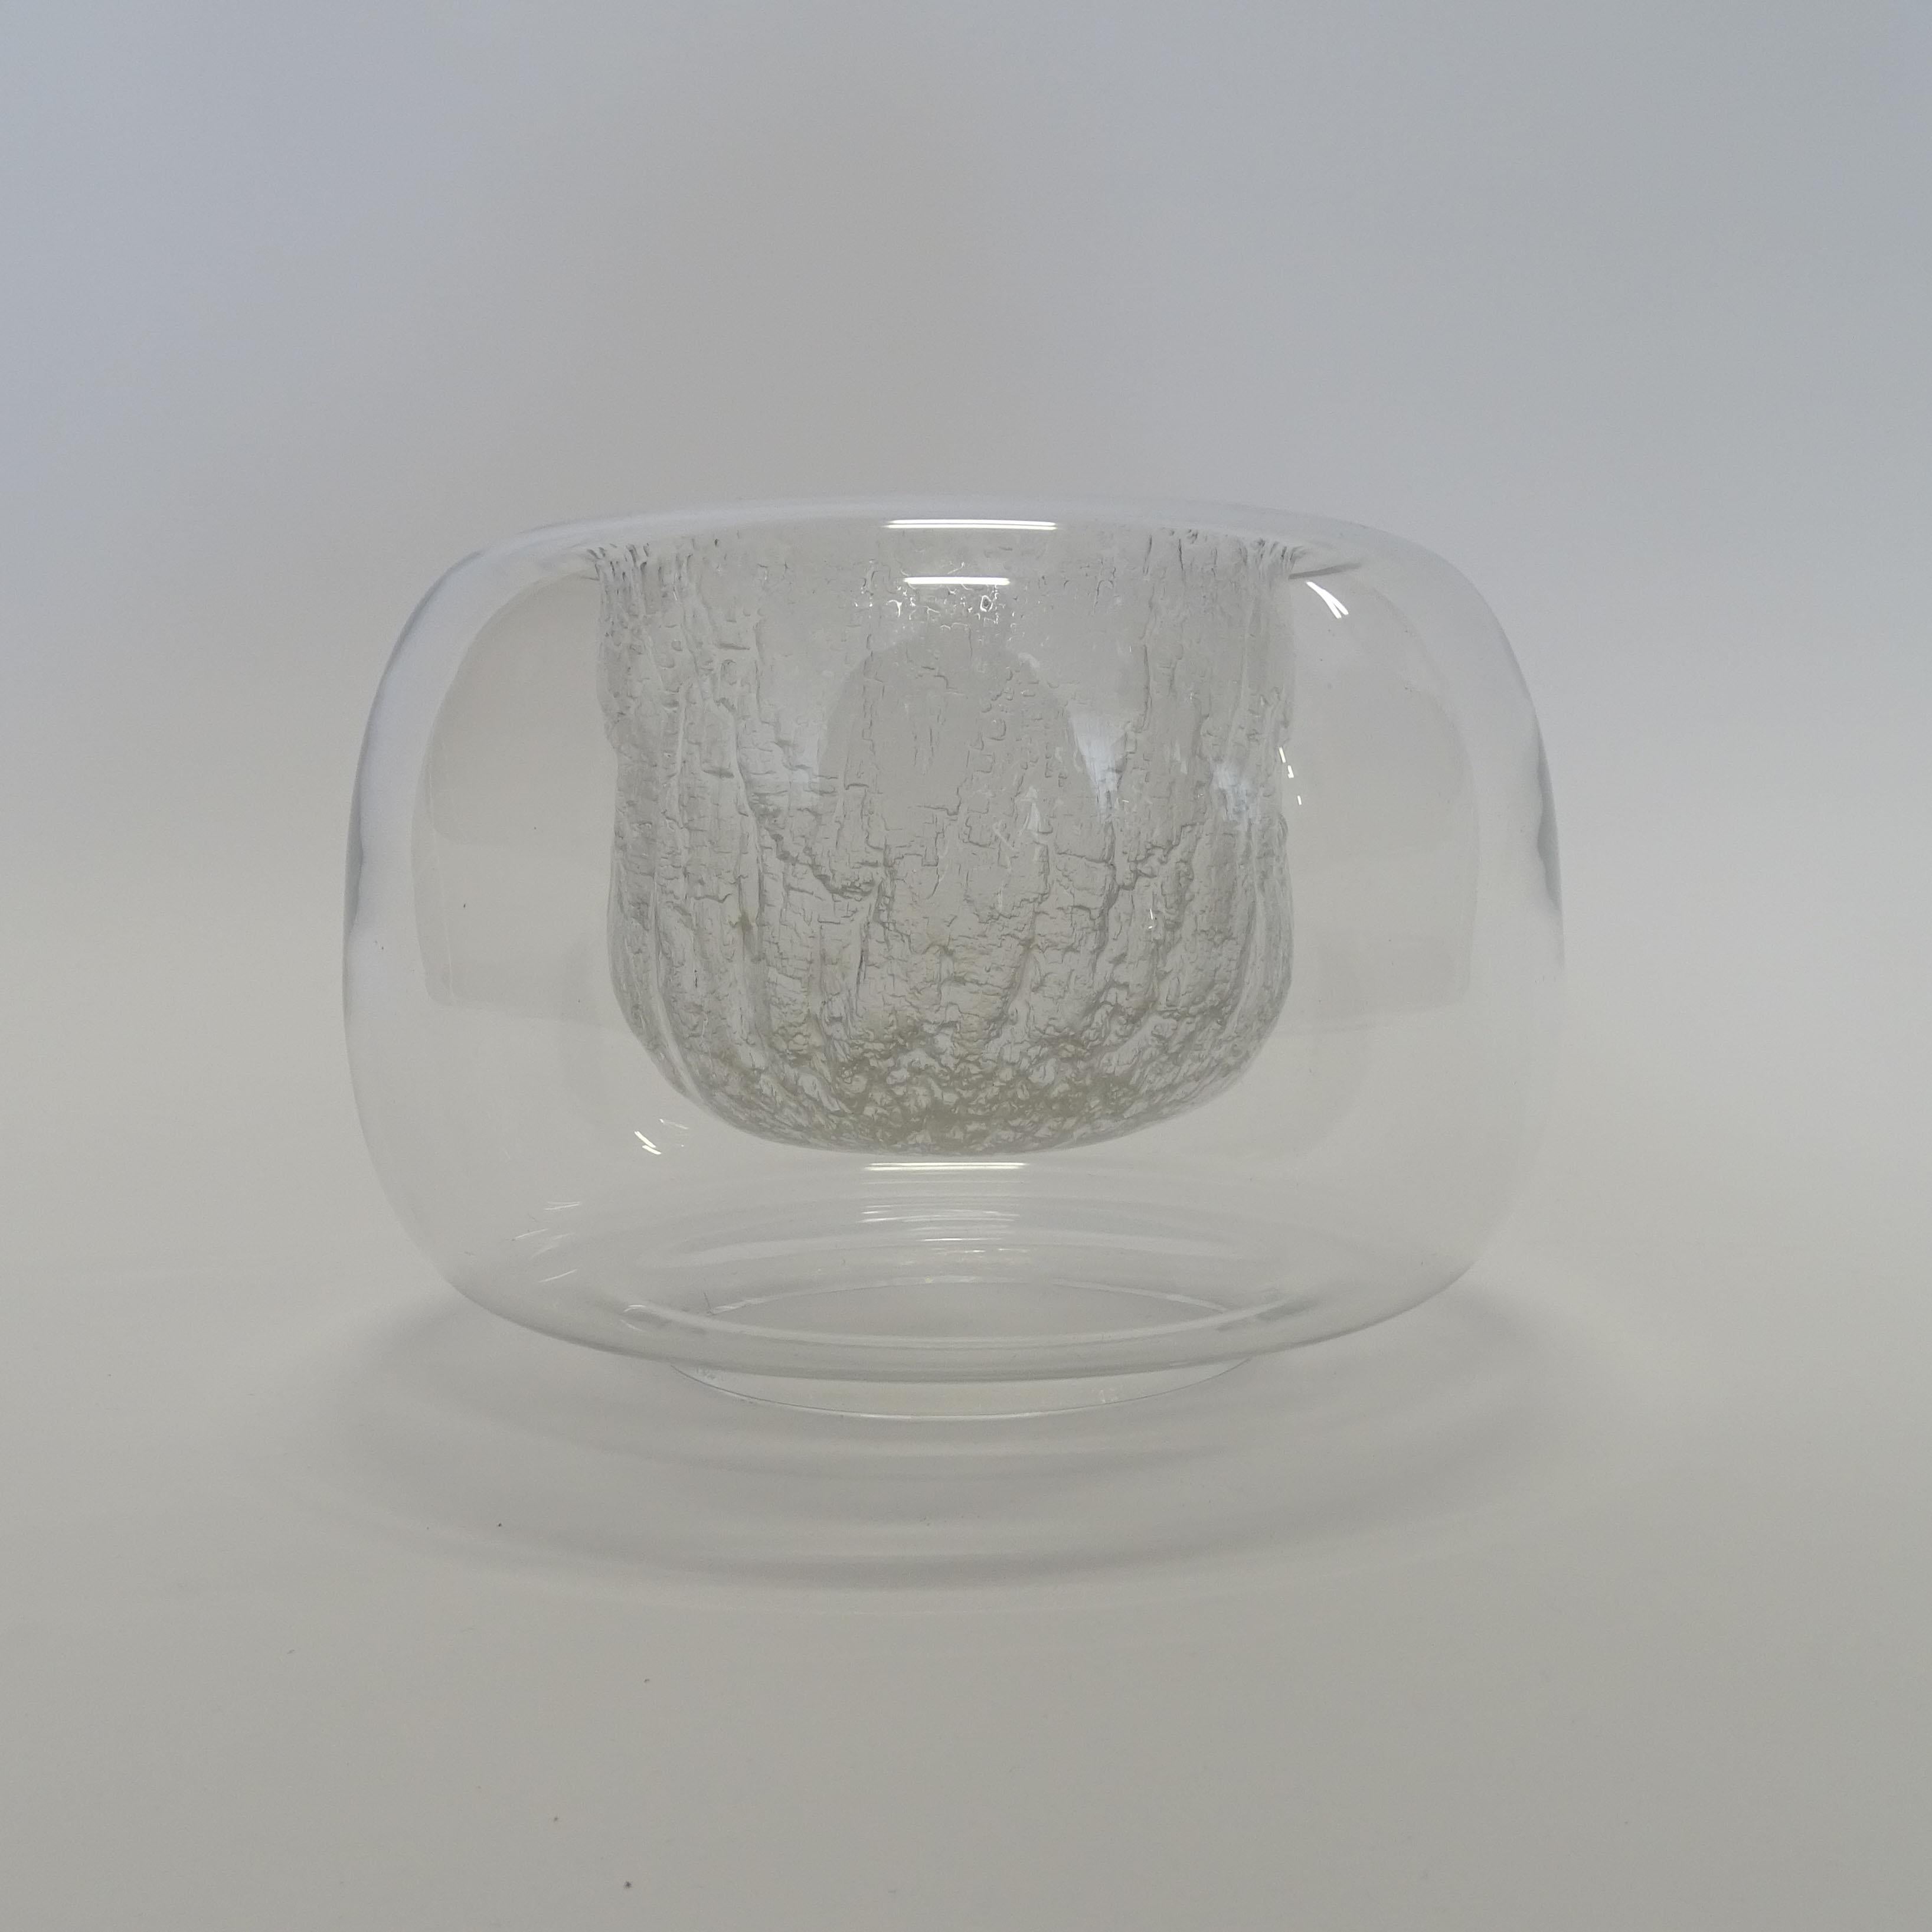 Timo Sarpaneva 'Finlandia' Mould Blown Glass vase, 
Fully signed Timo Sarpaneva 3375
Finland 1960s.